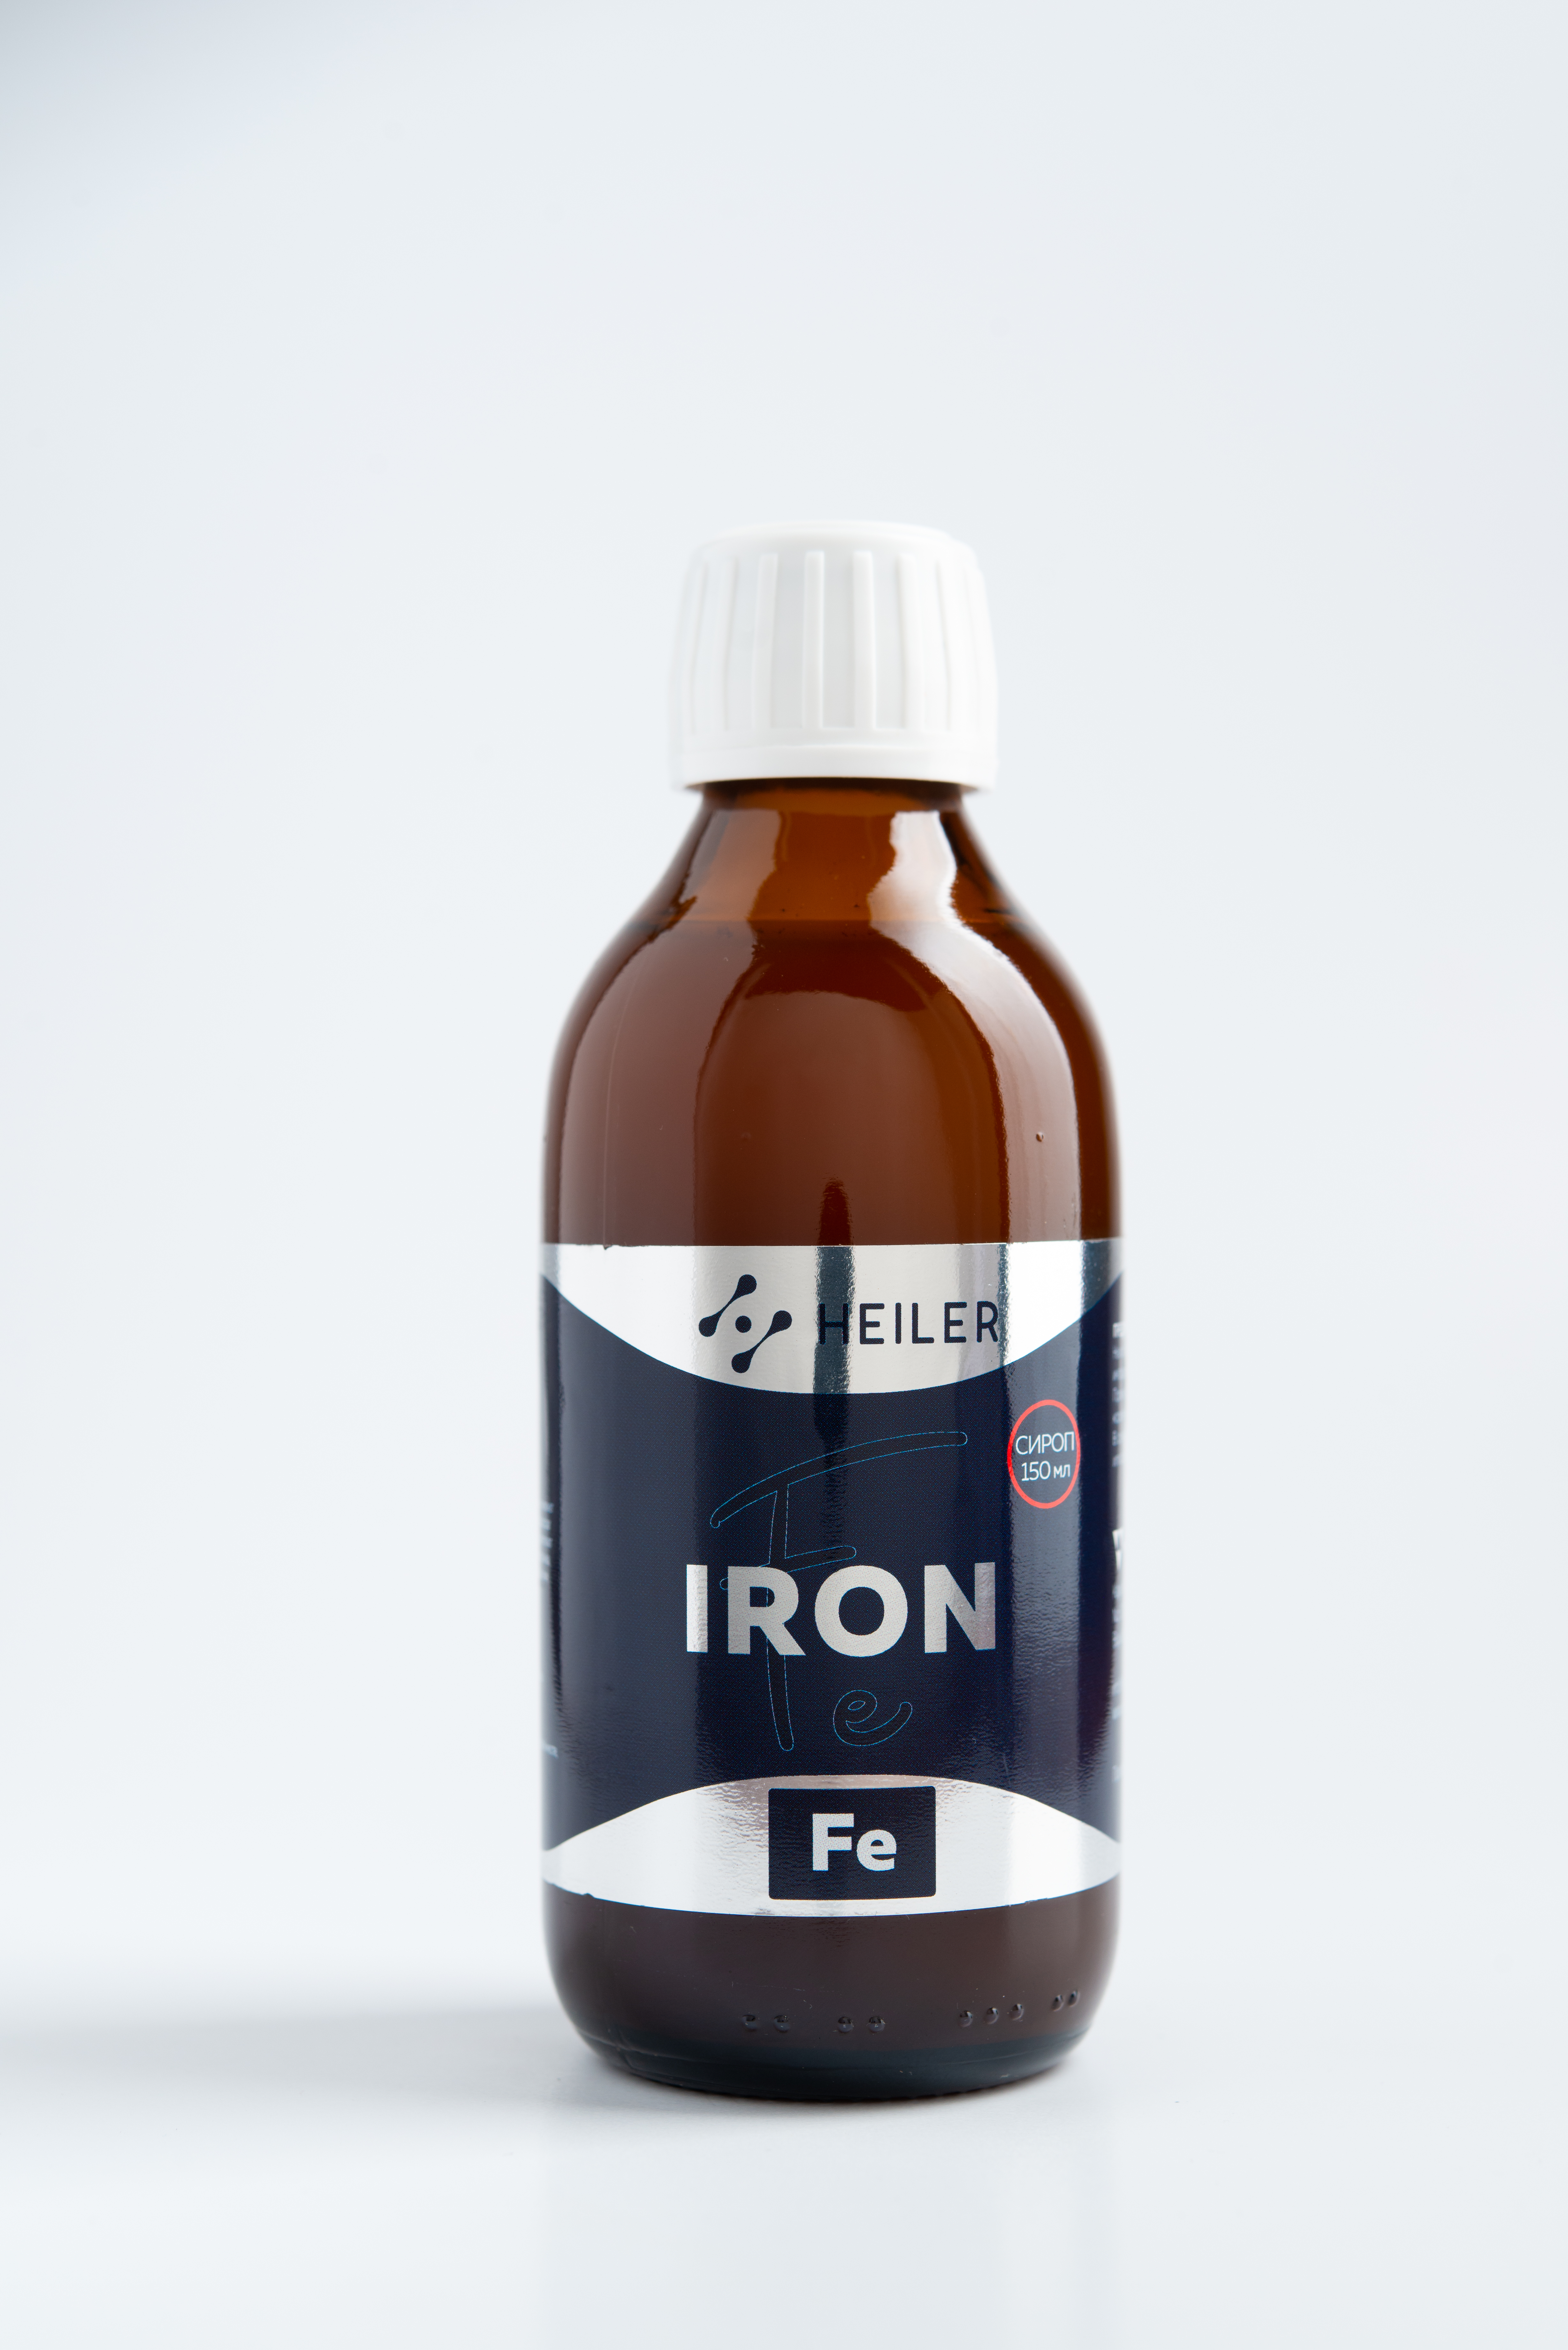  (Iron)  150  (Heiler)